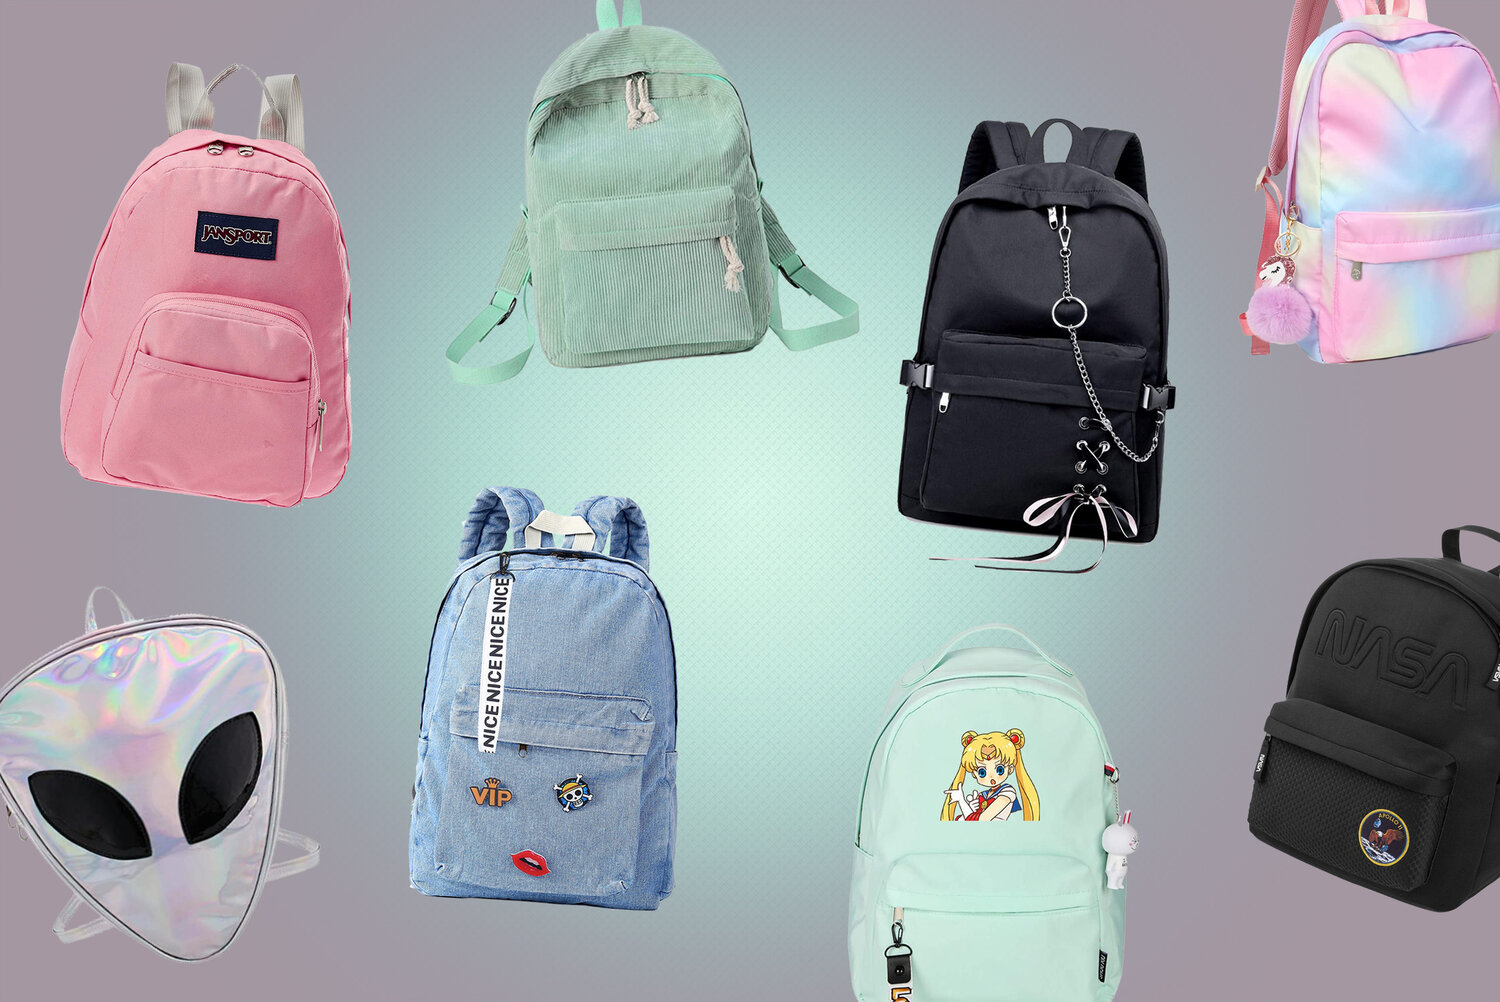 21 Aesthetic Backpacks under $50 - Grunge, Pastel, 90s, Cute Backpacks